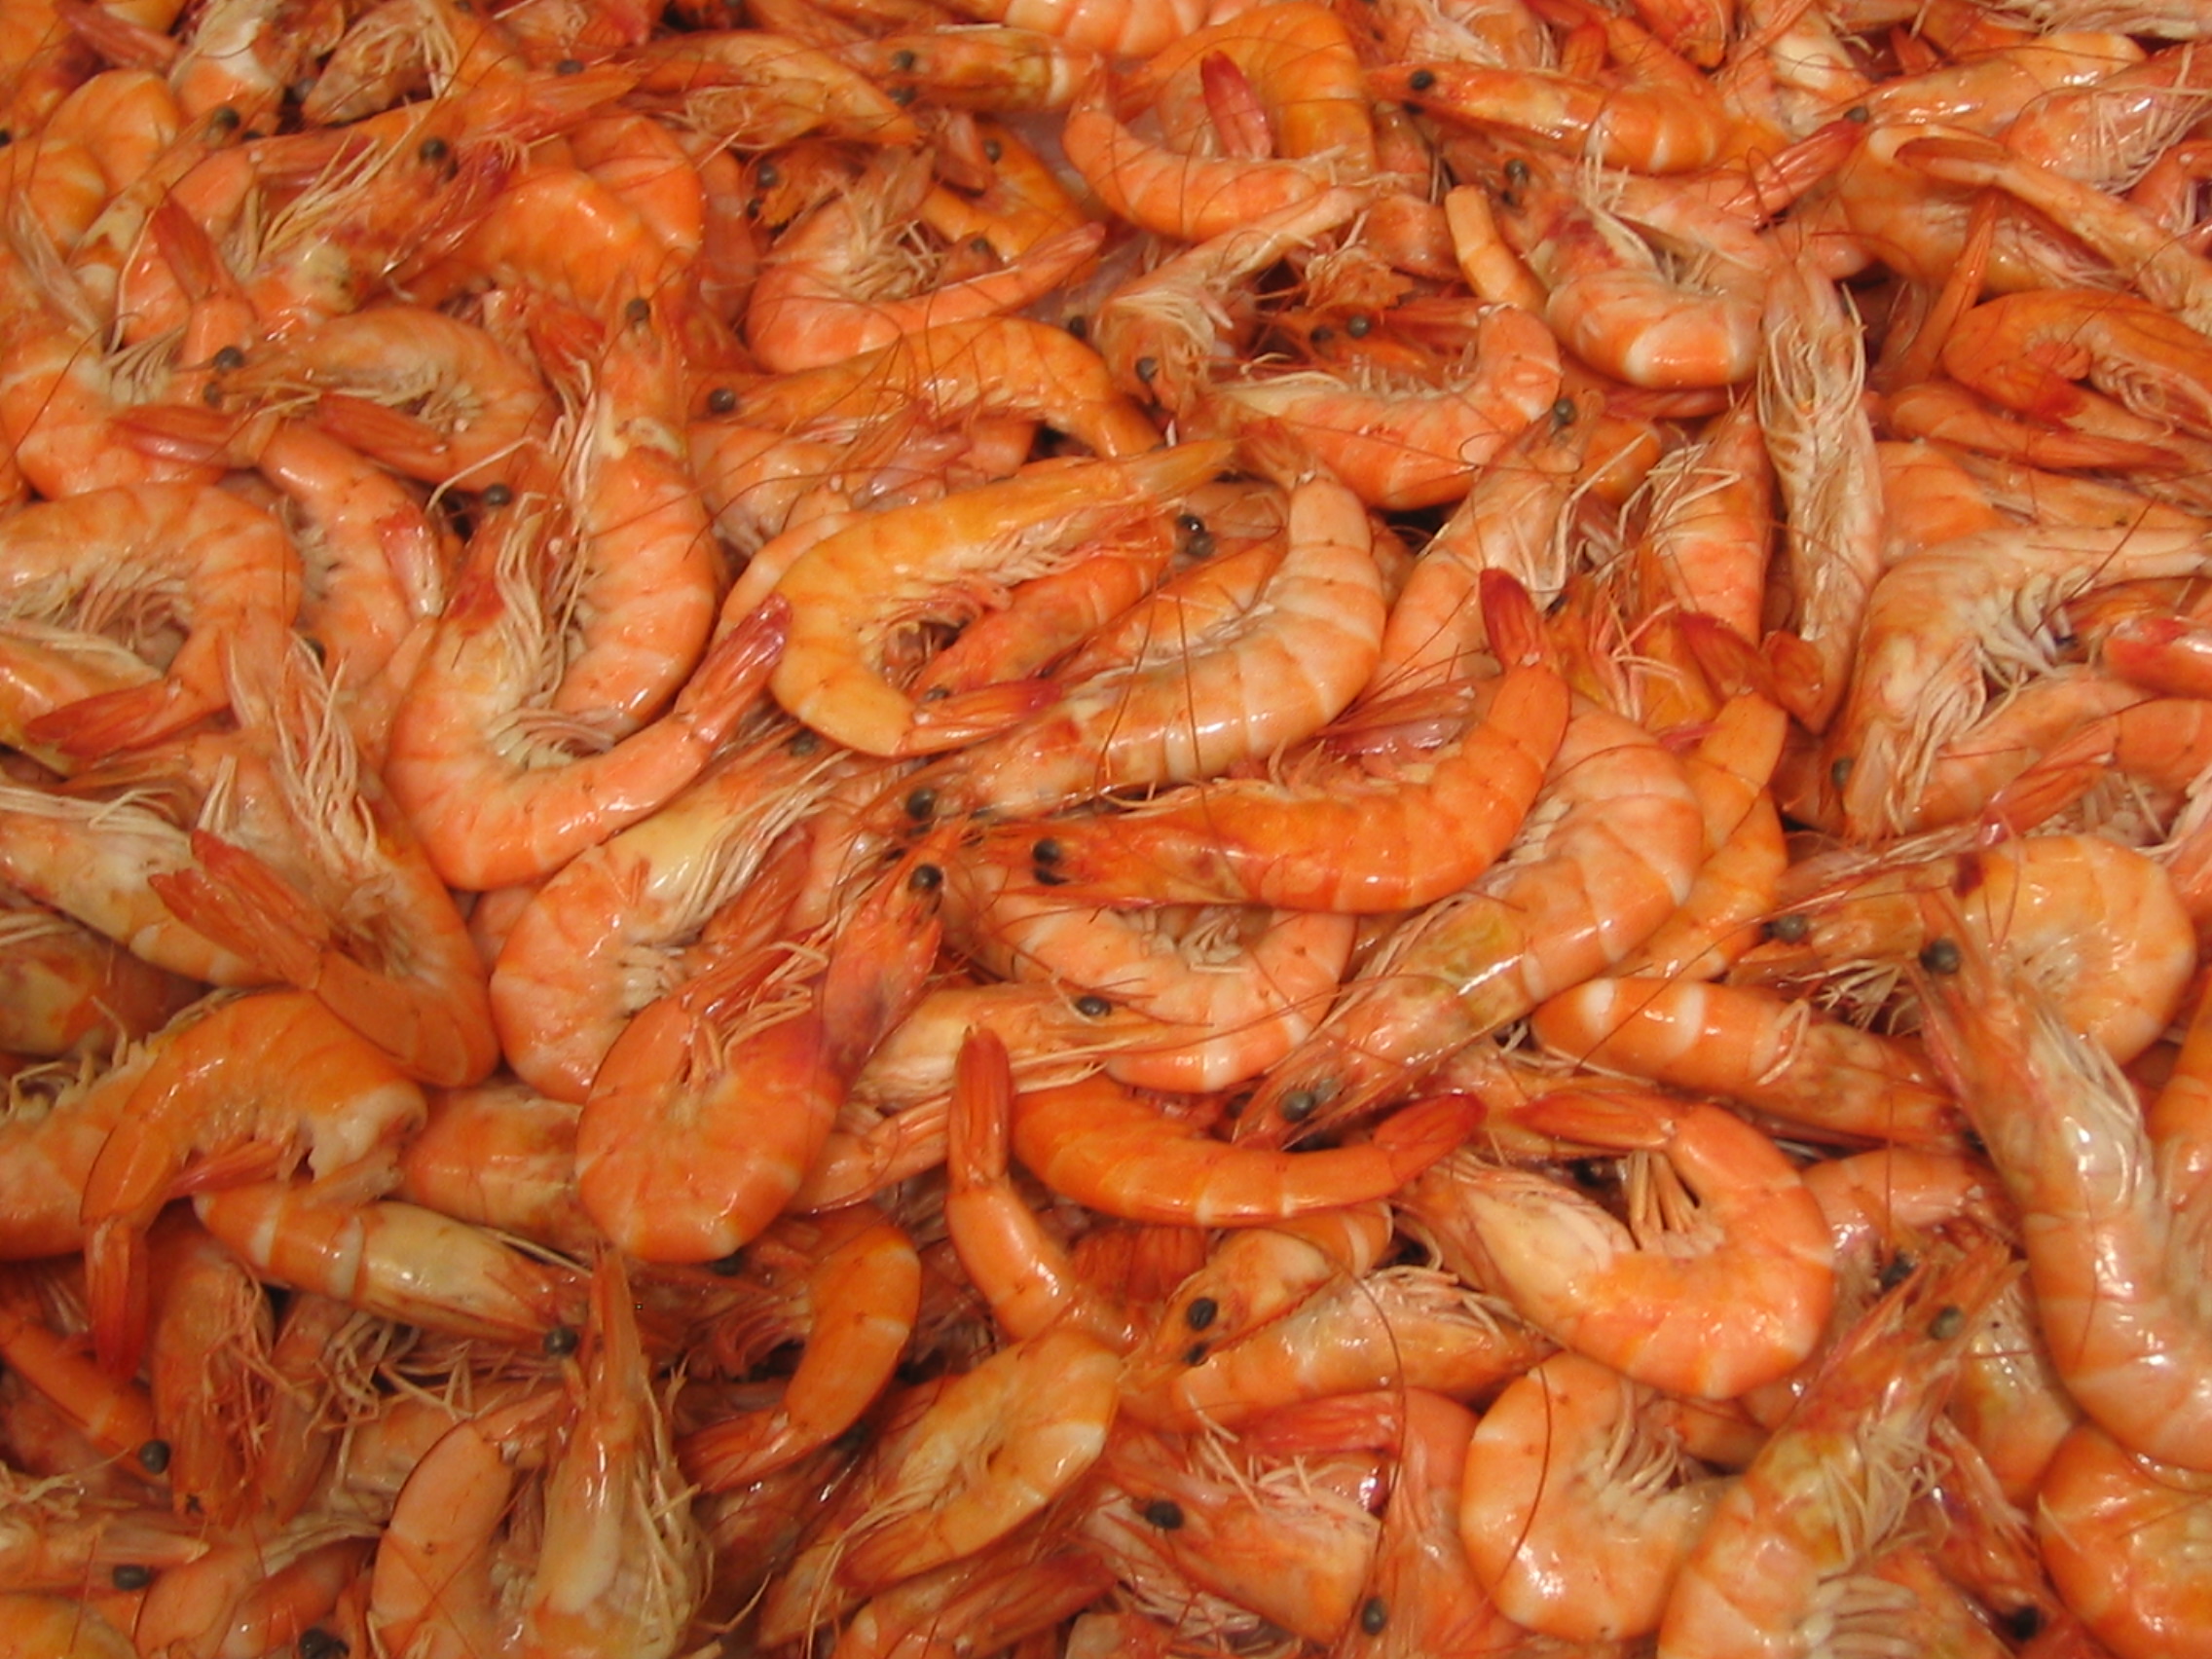 Delicious-Looking Shrimp.